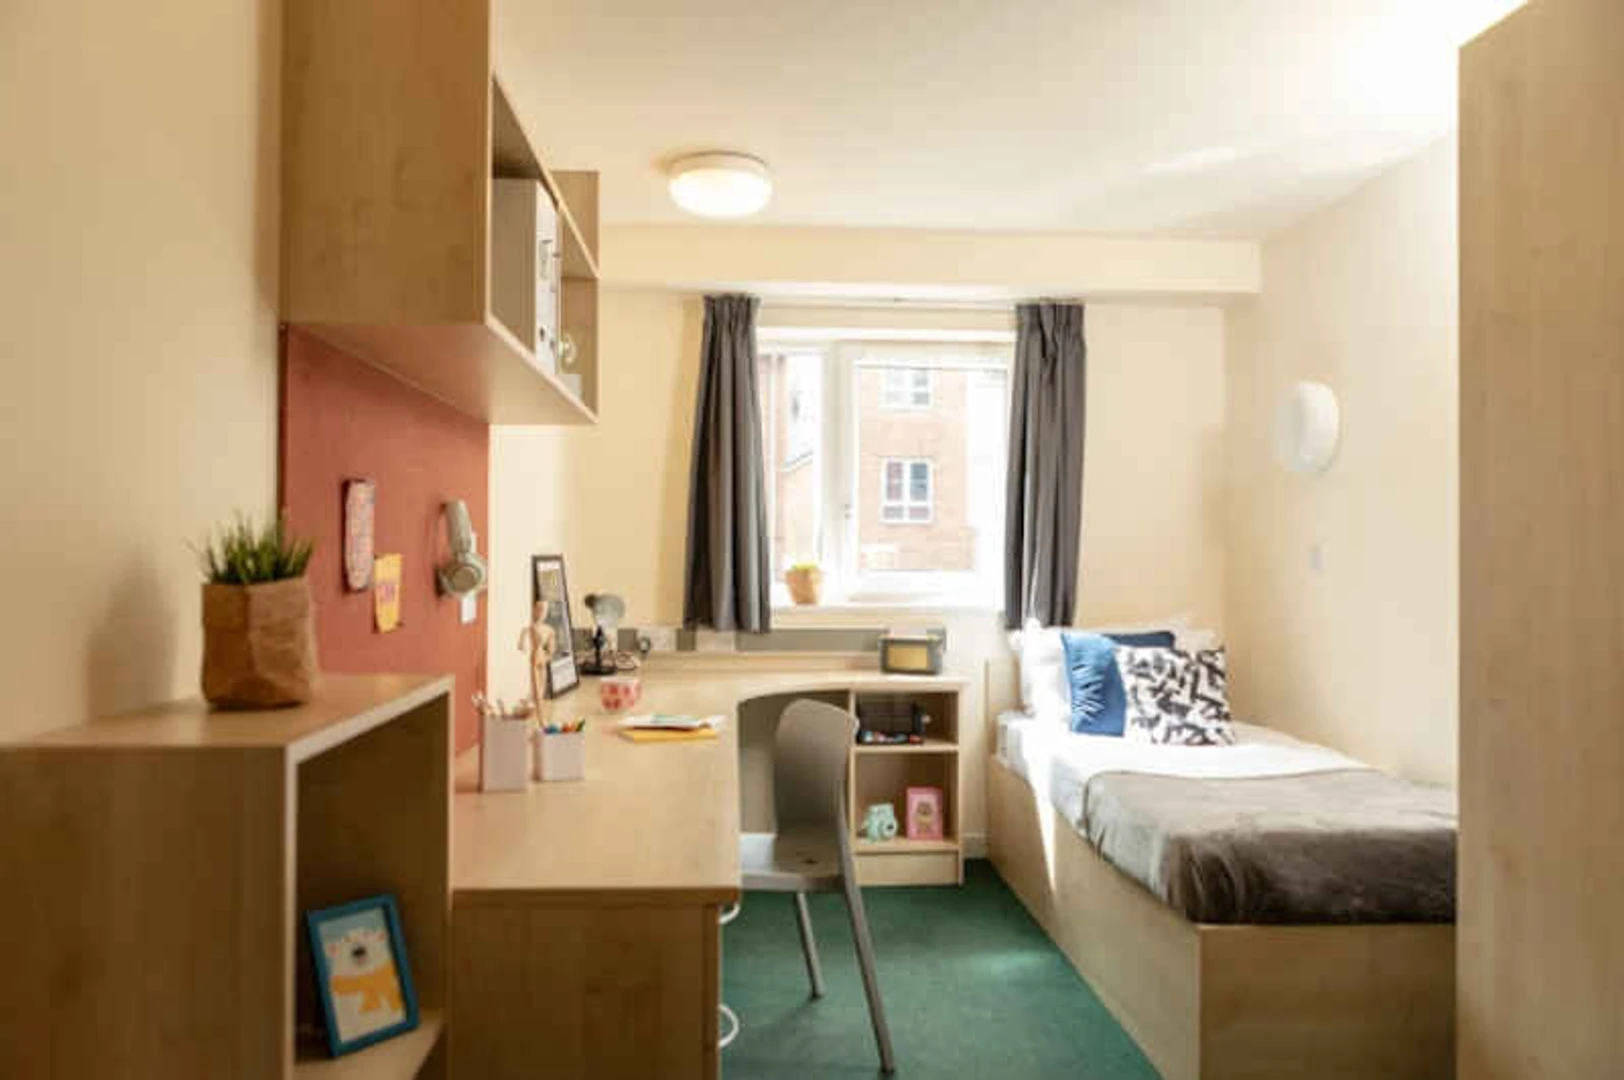 Zimmer mit Doppelbett zu vermieten Birmingham